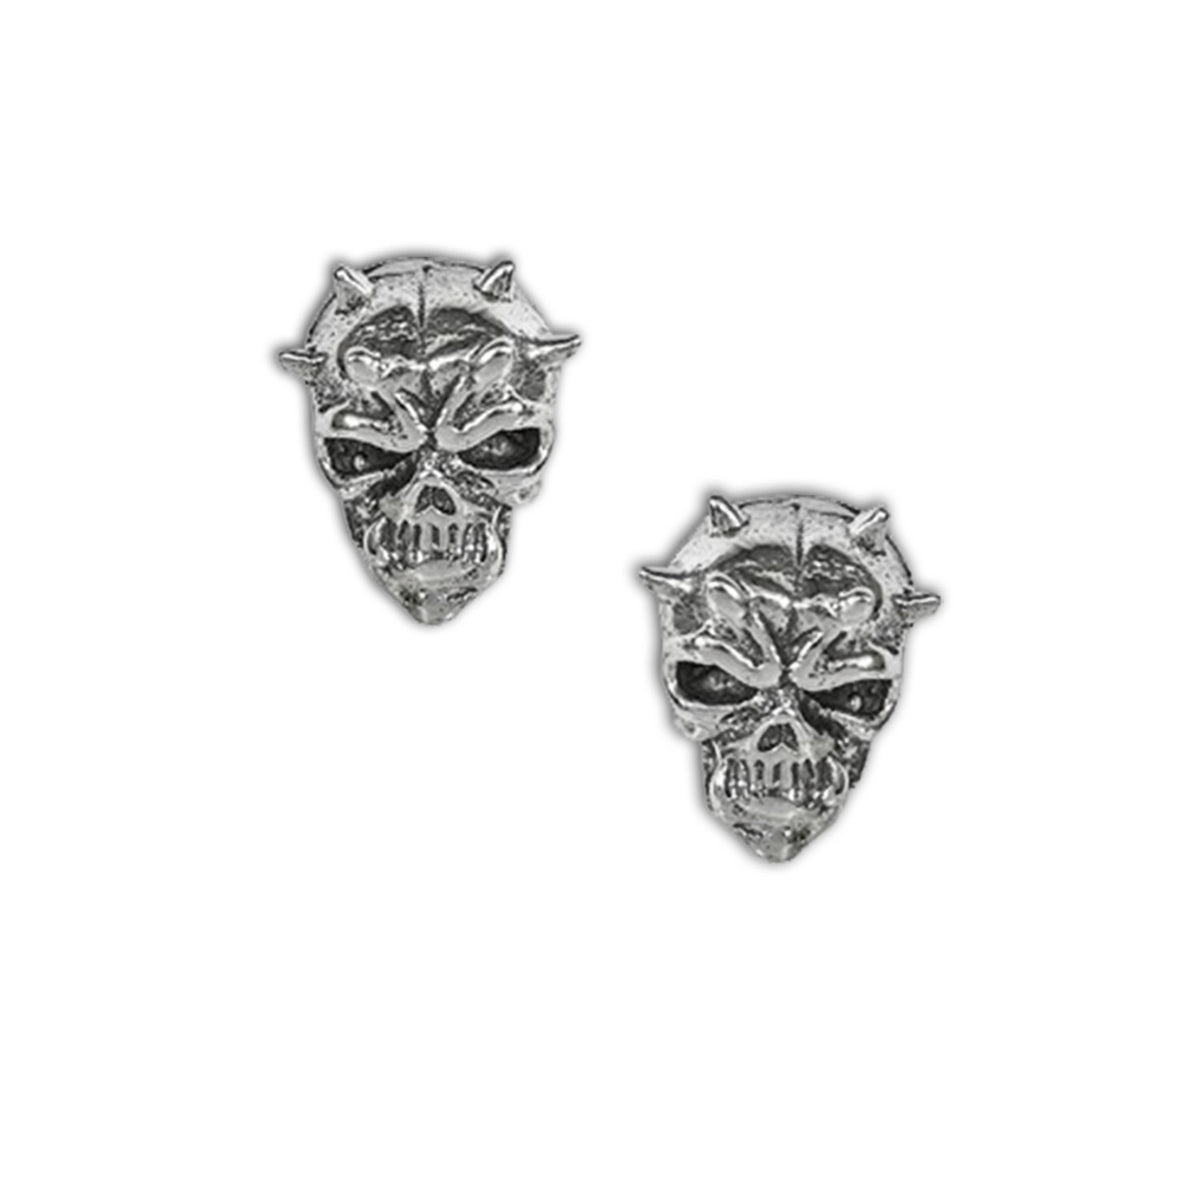 horned skull earrings - skull stud earring jewellery